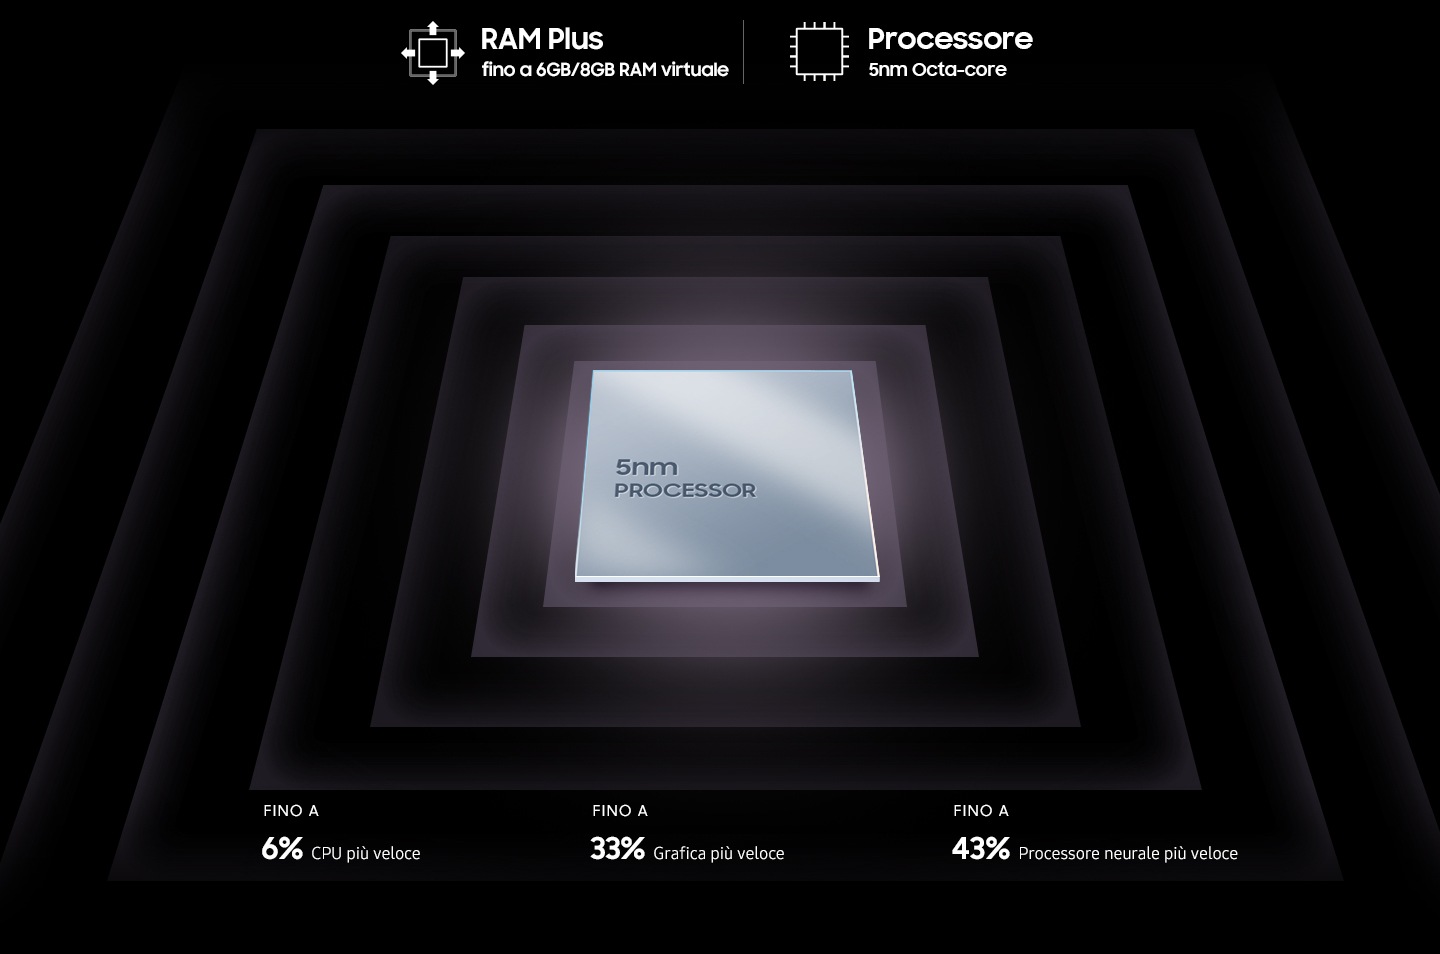 L’immagine mostra il chip metallico quadrato del processore con il testo 5nm processor sulla superficie. Il chip è circondato dai testi RAM Plus up to 6GB/8GB virtual RAM, Processor 5nm Octa-core, Up to 6% faster performance core, Up to 33% faster graphic performance, Up to 43% faster neural processor. 